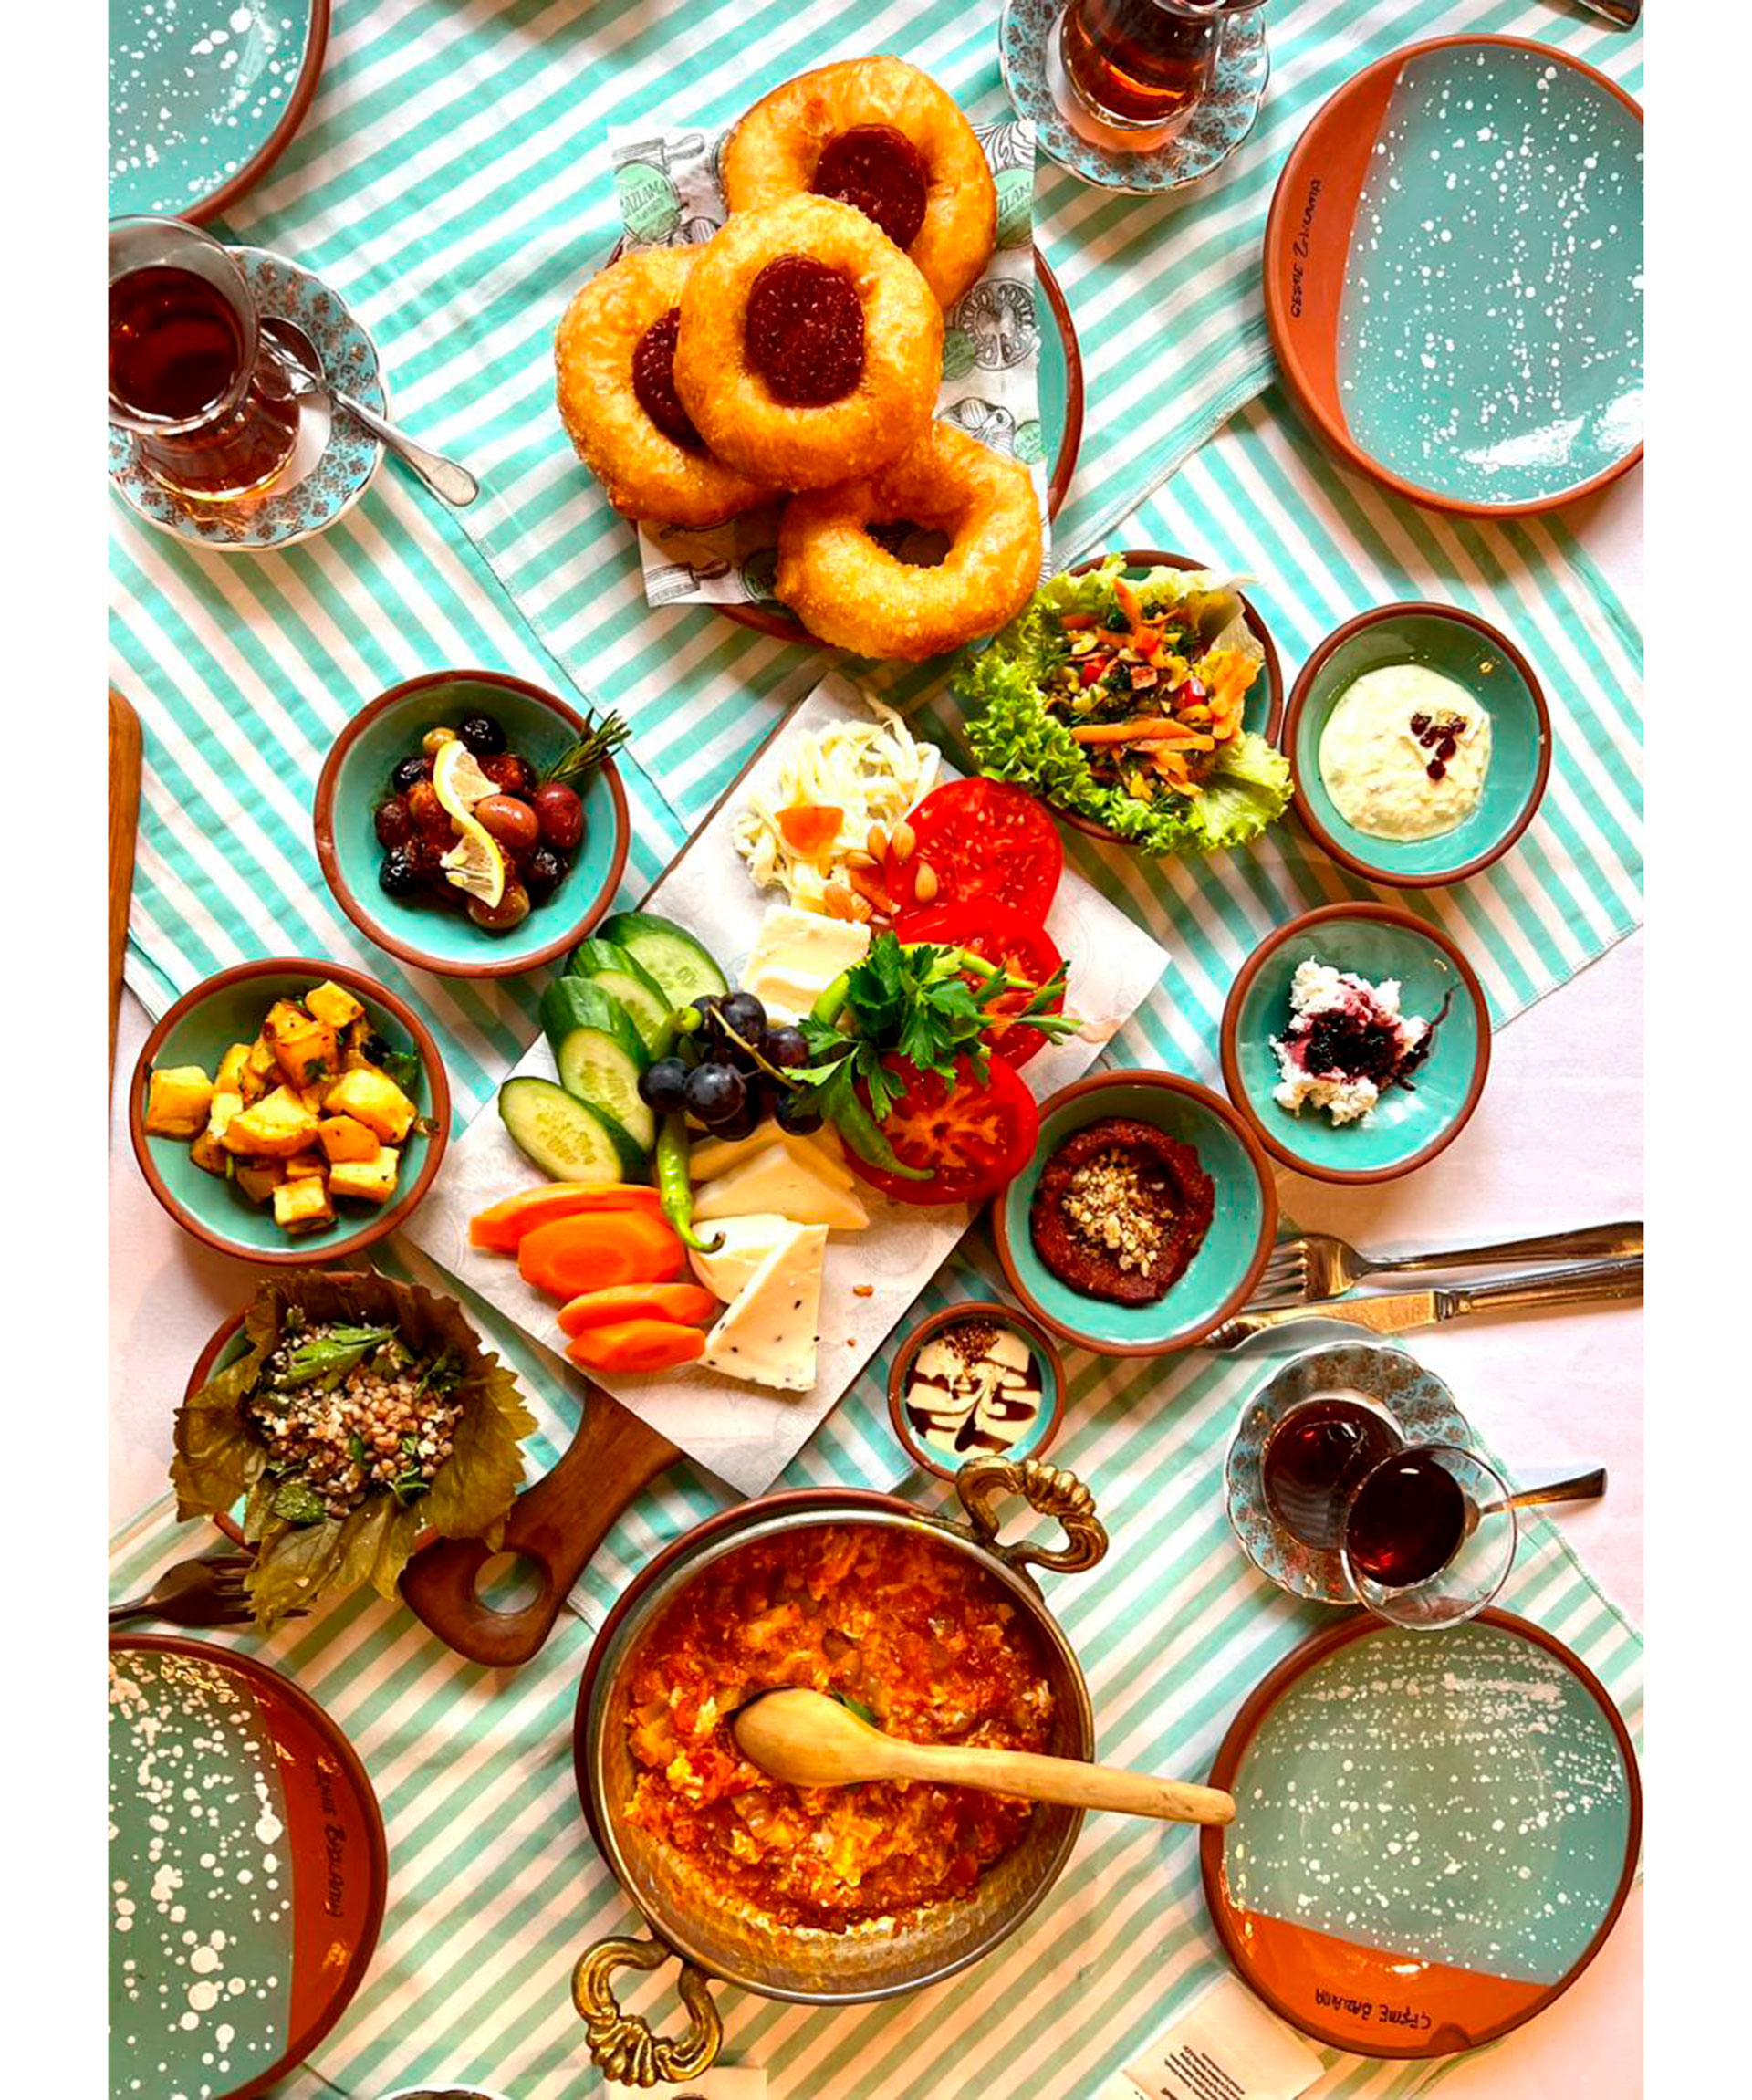 Un desayuno turco, o brunch, para los fines de semana, con platos dulces y salados